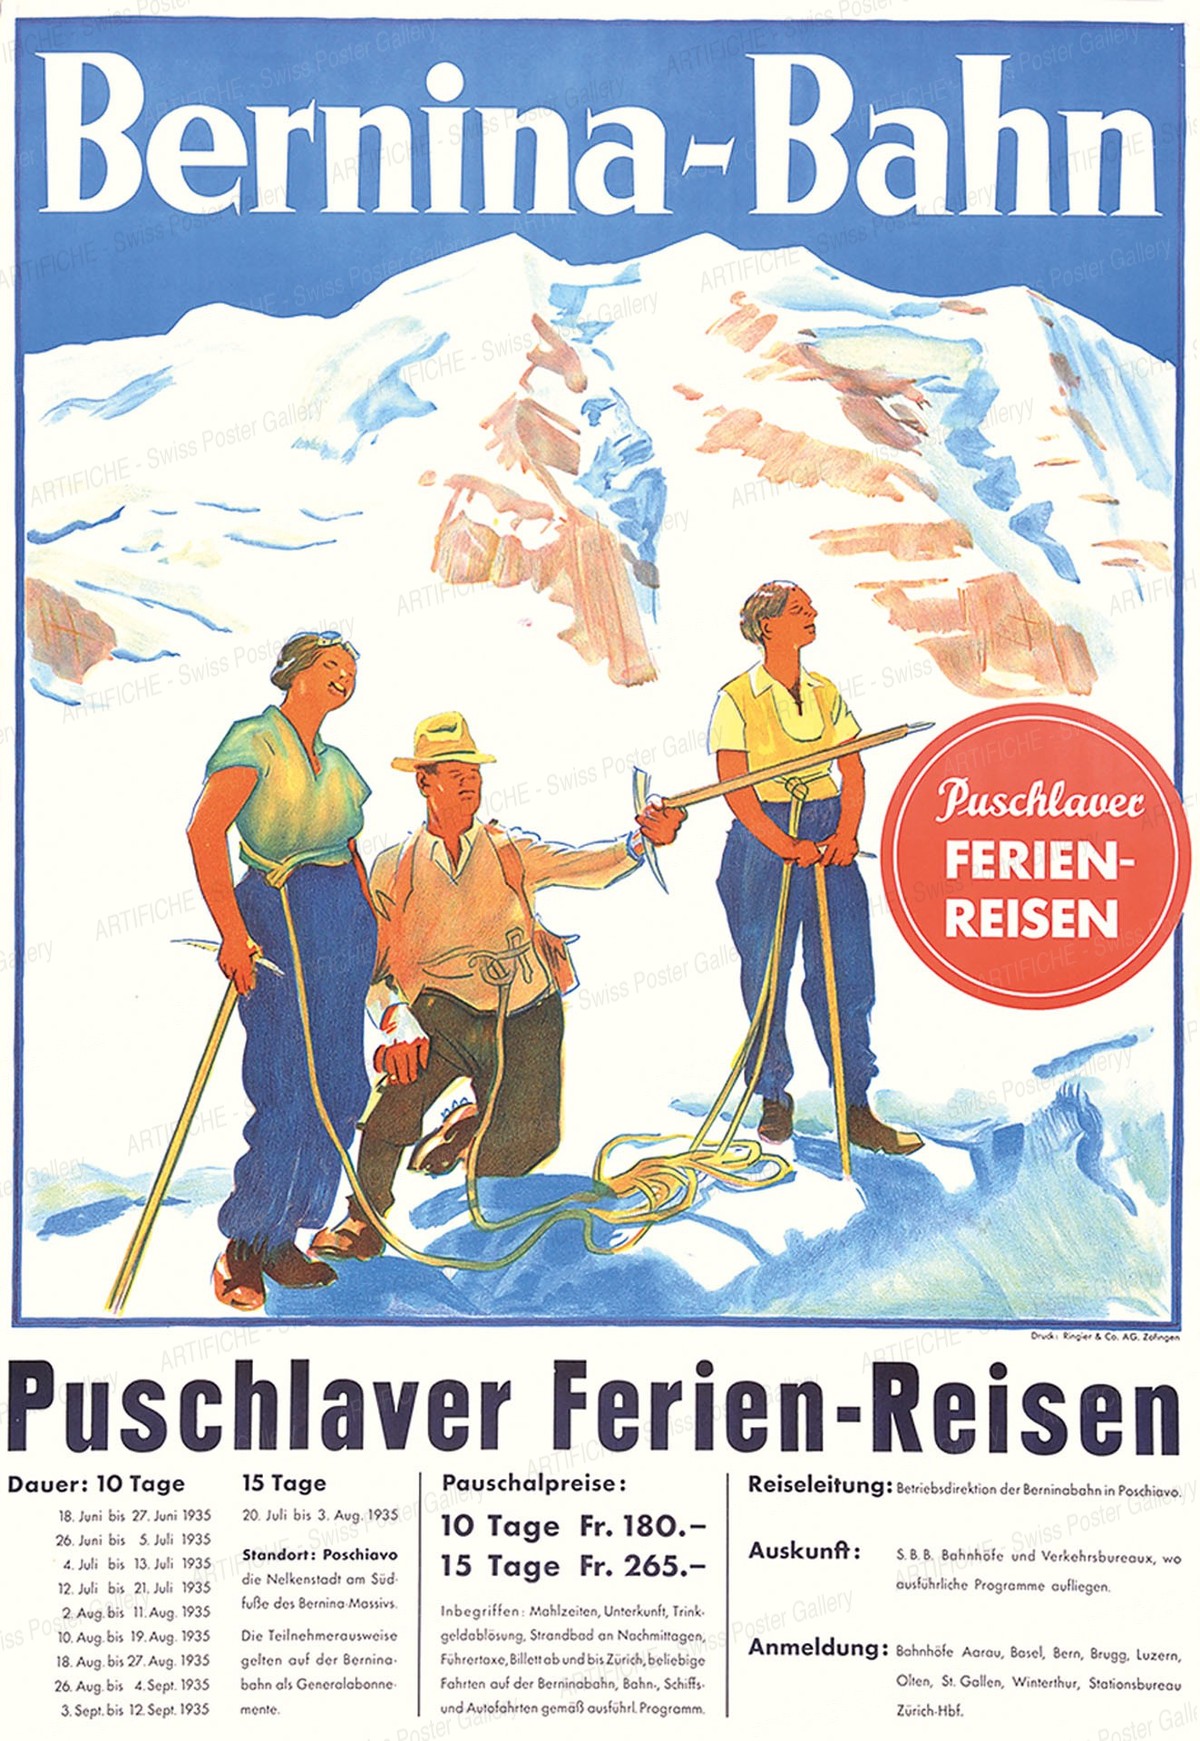 Bernina-Bahn – Puschlaver-Ferien-Reisen, Artist unknown